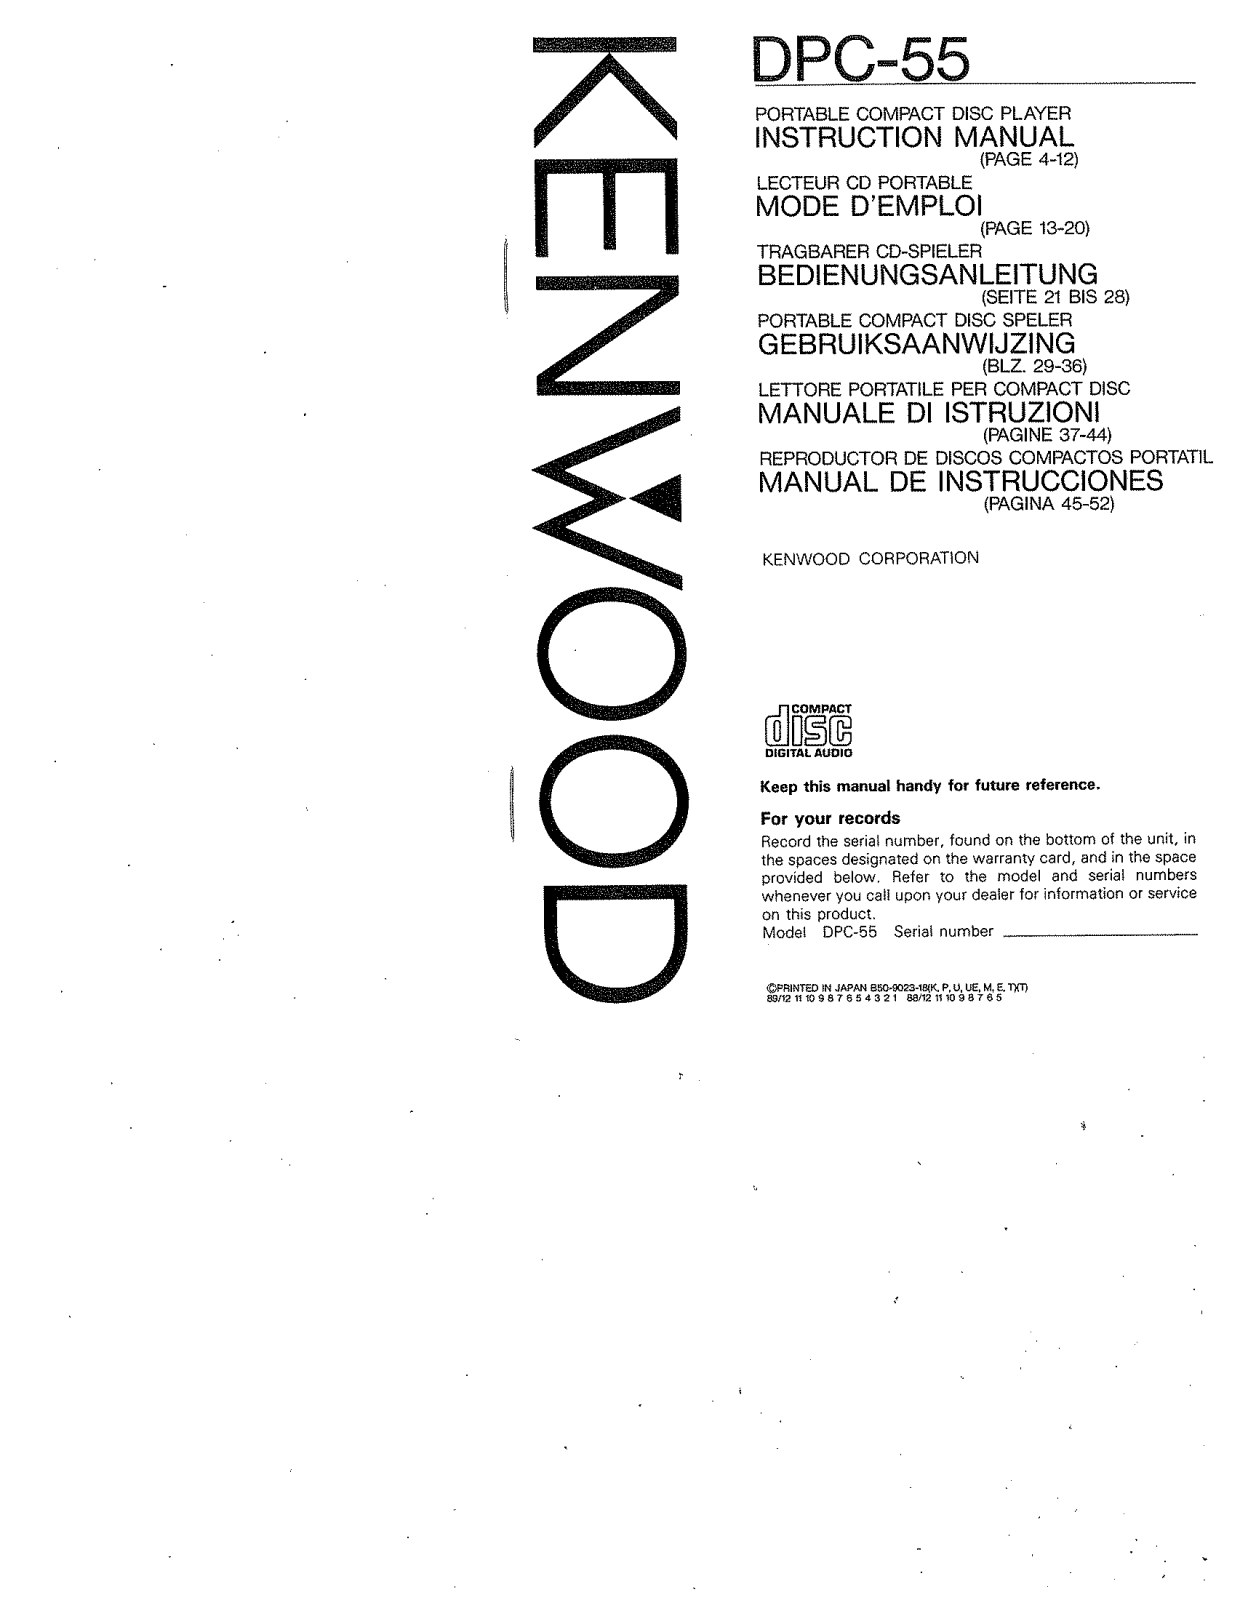 Kenwood DPC-55 Owner's Manual